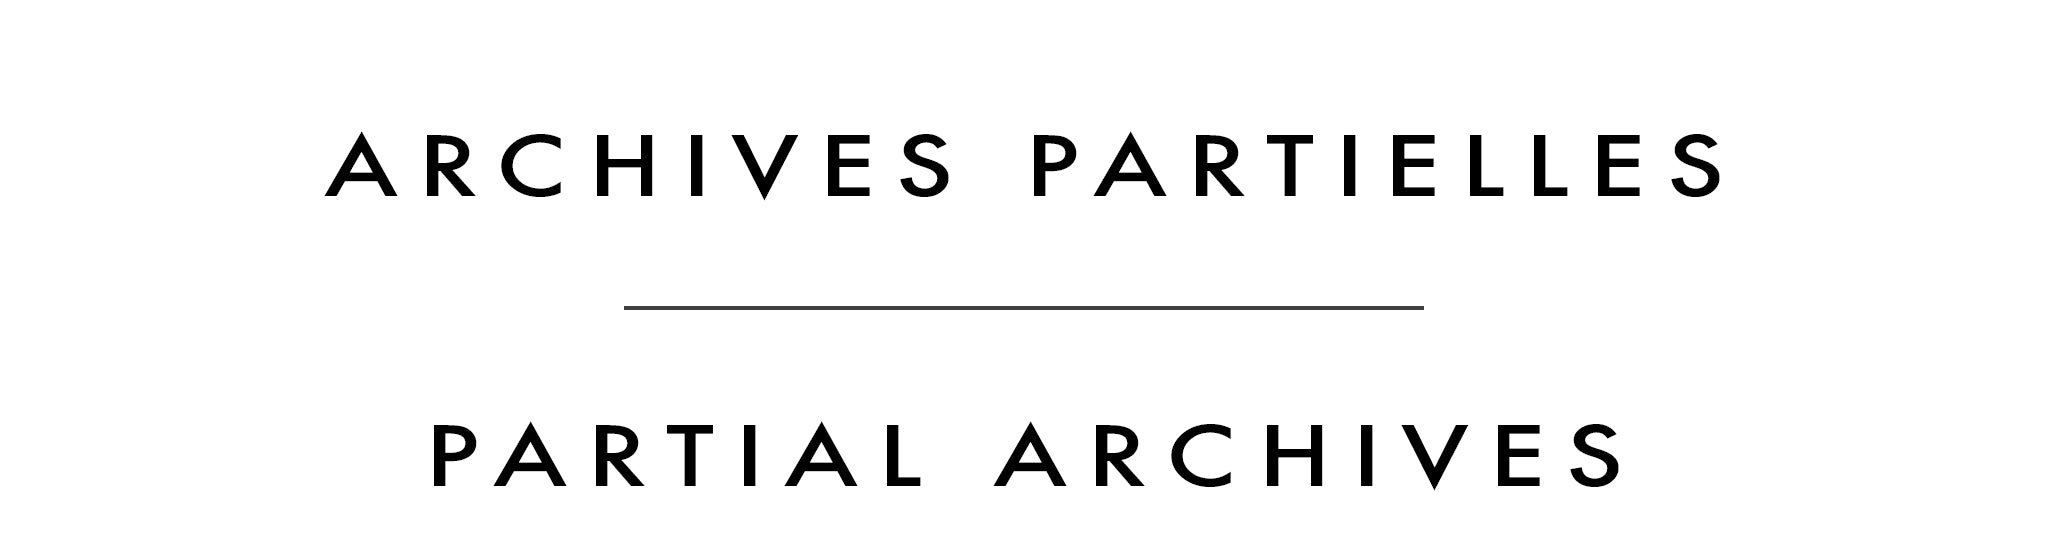 Archives partielles | Partial Archives | Bev Rodin